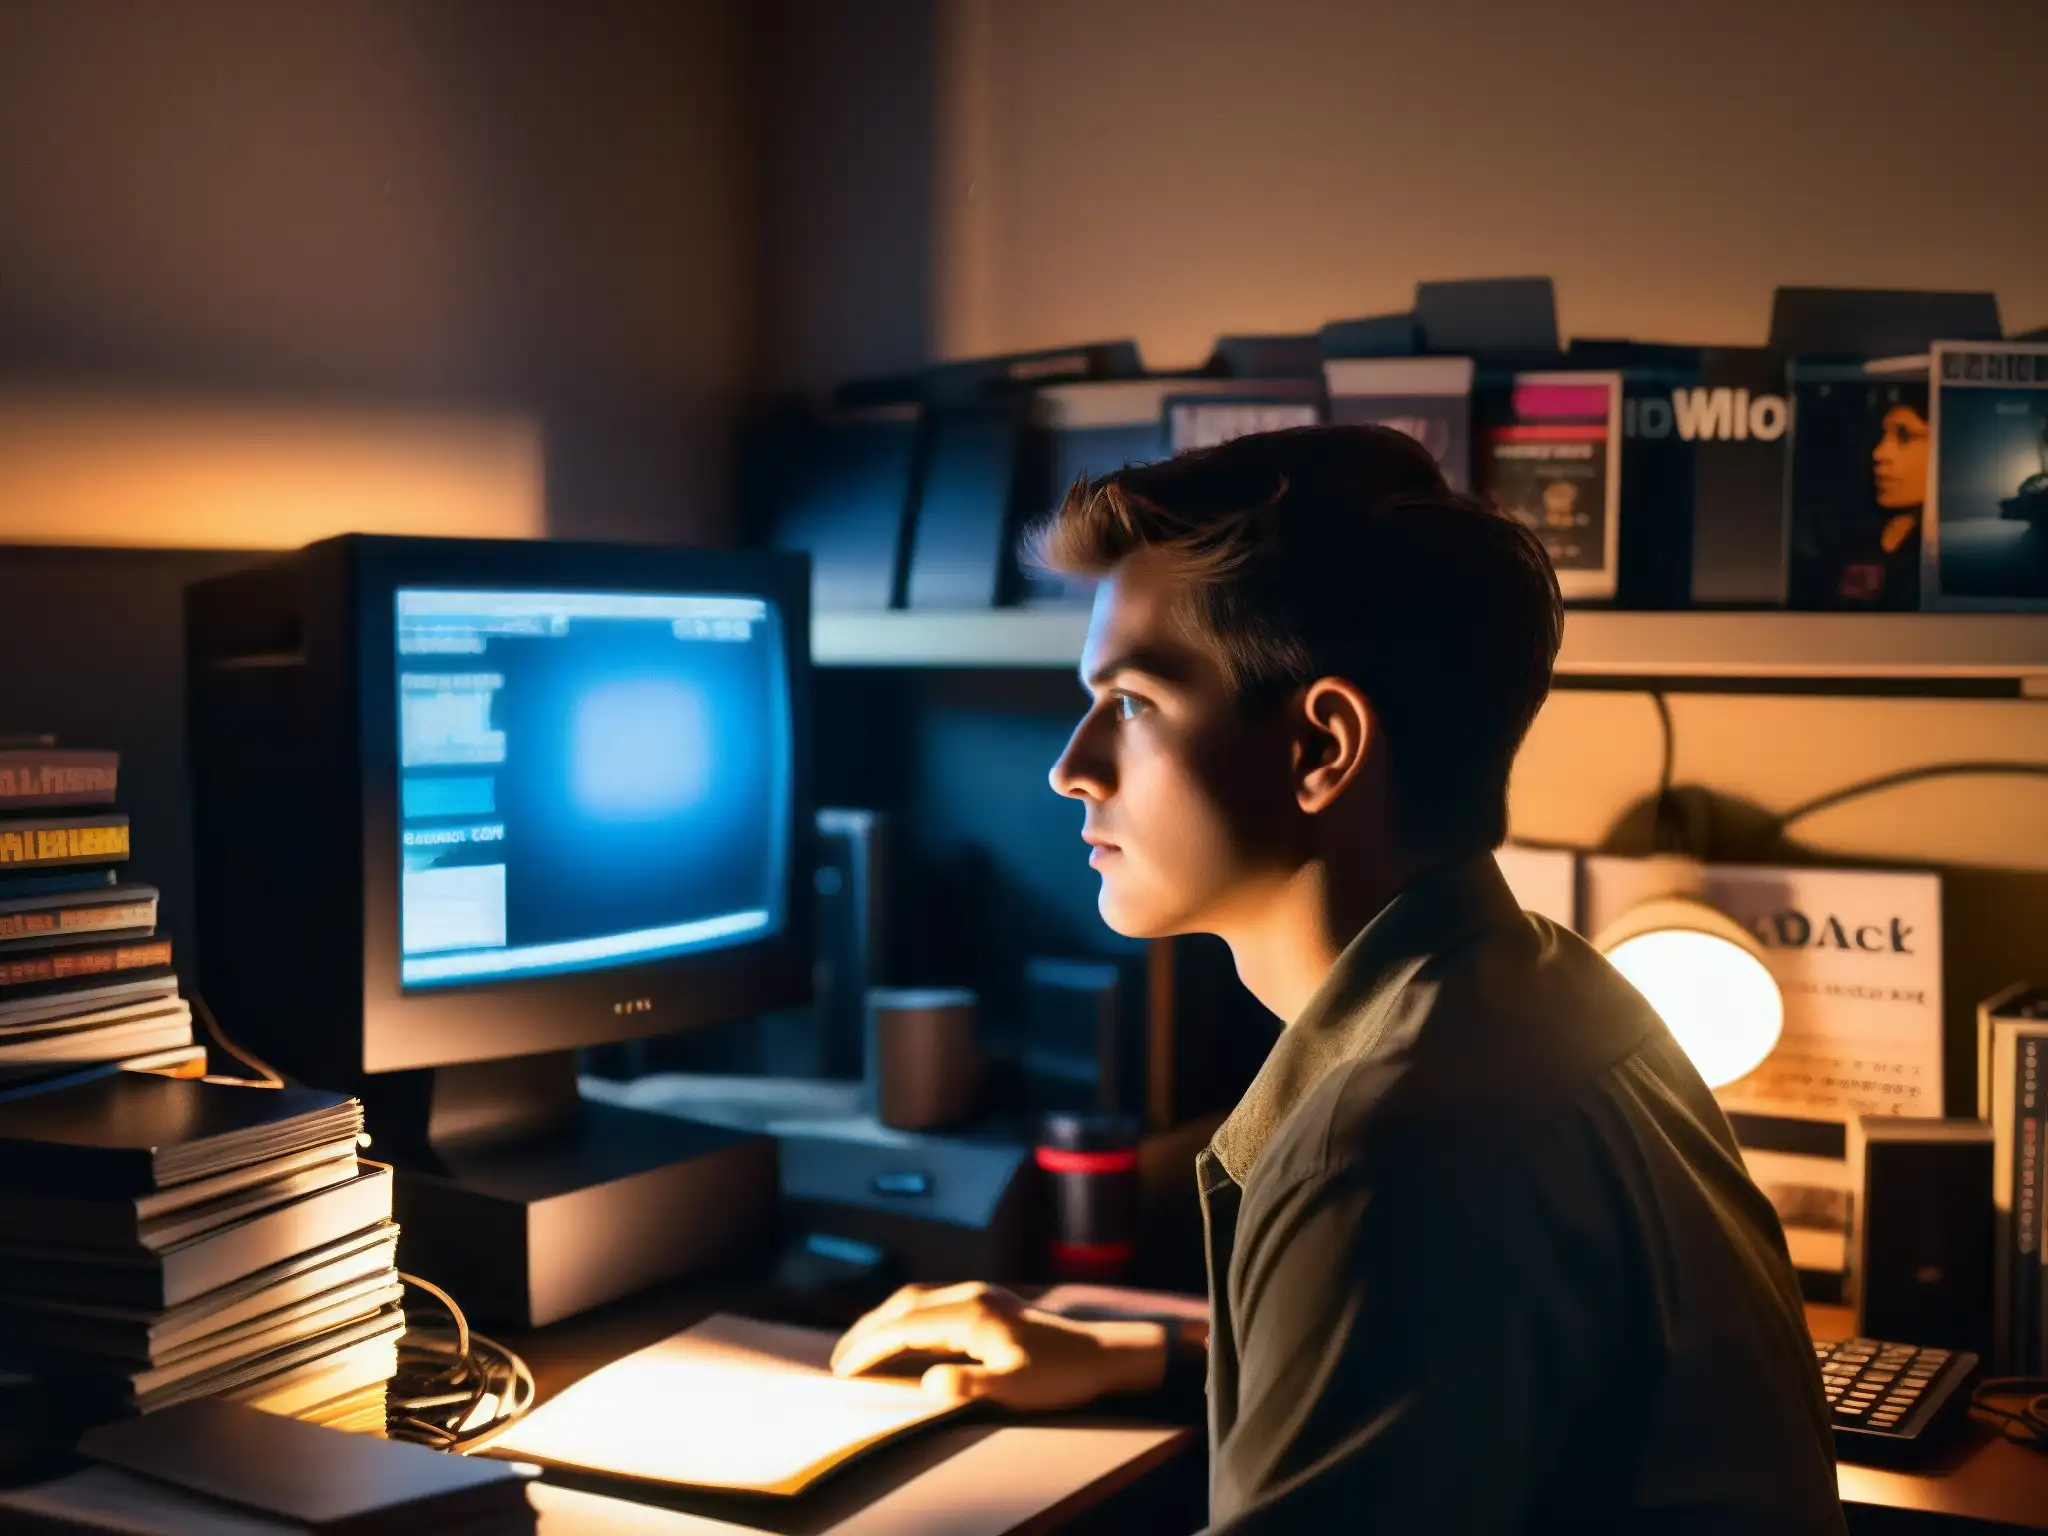 Persona concentrada en la luz de un monitor en una habitación oscura, rodeada de desorden y revistas de tecnología